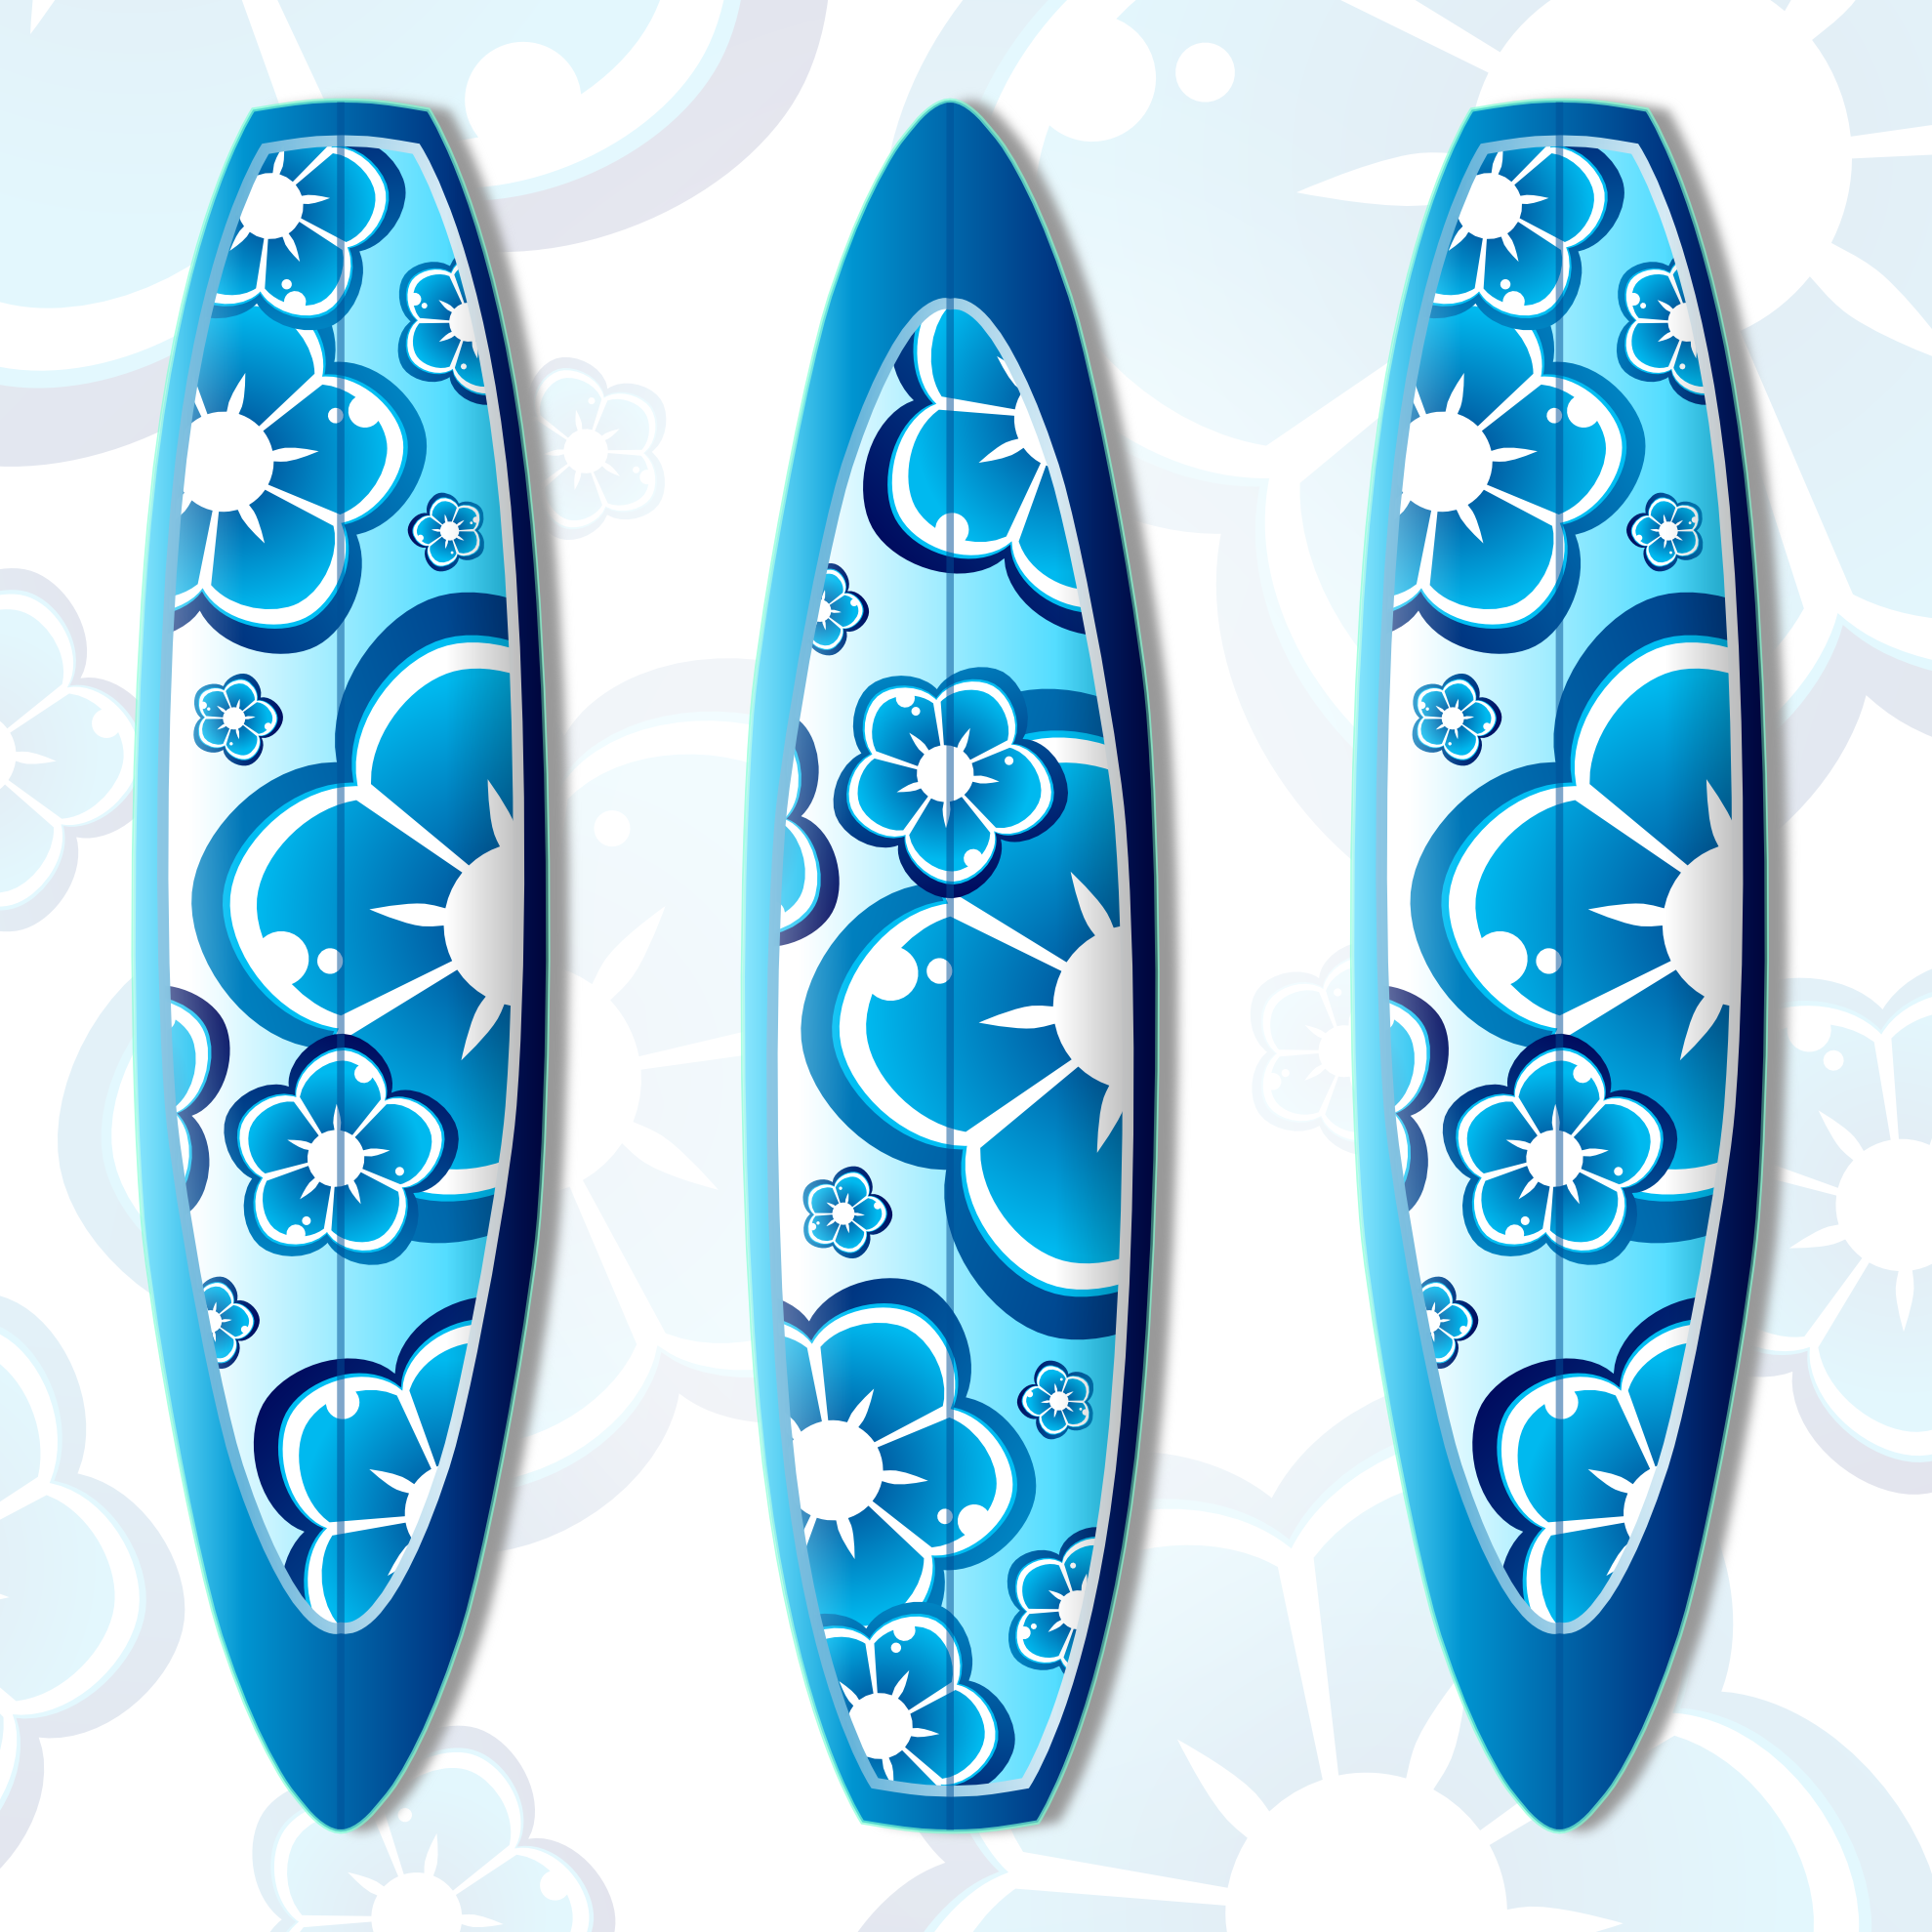 clipartist.net » Clip Art » surfboards surfboard blue viscious ...